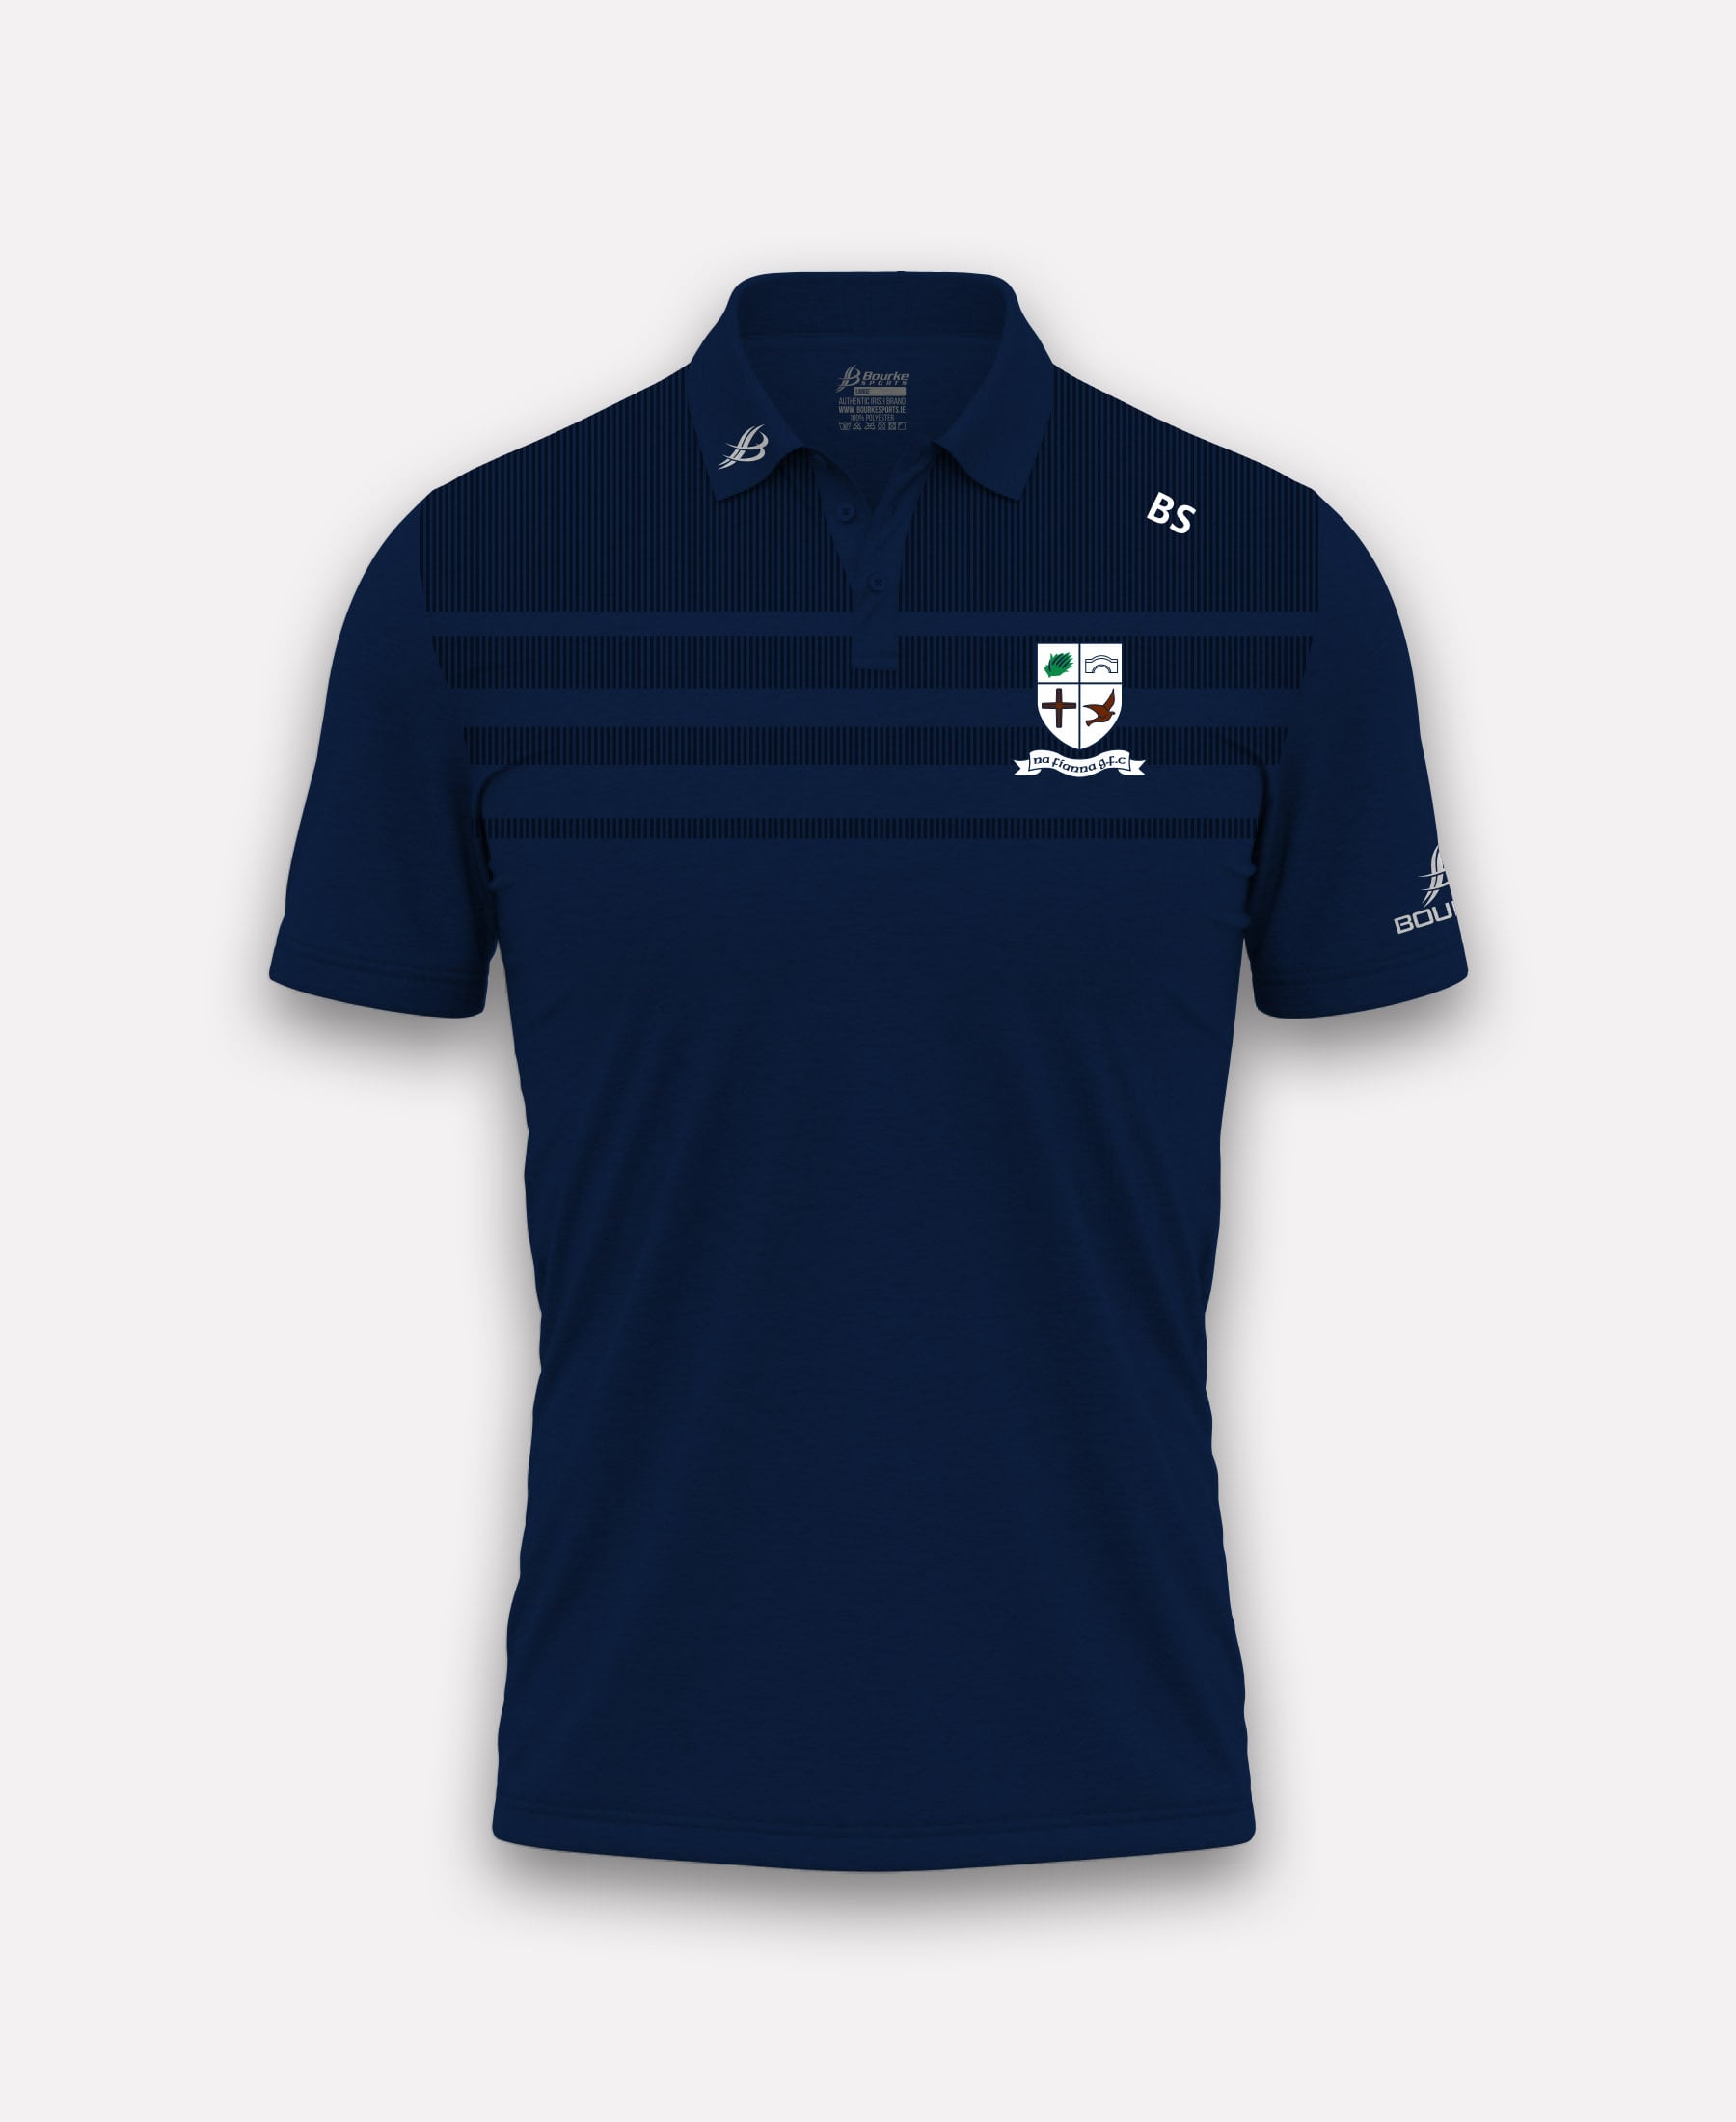 Na Fianna LGFA TACA Polo Shirt (Navy)